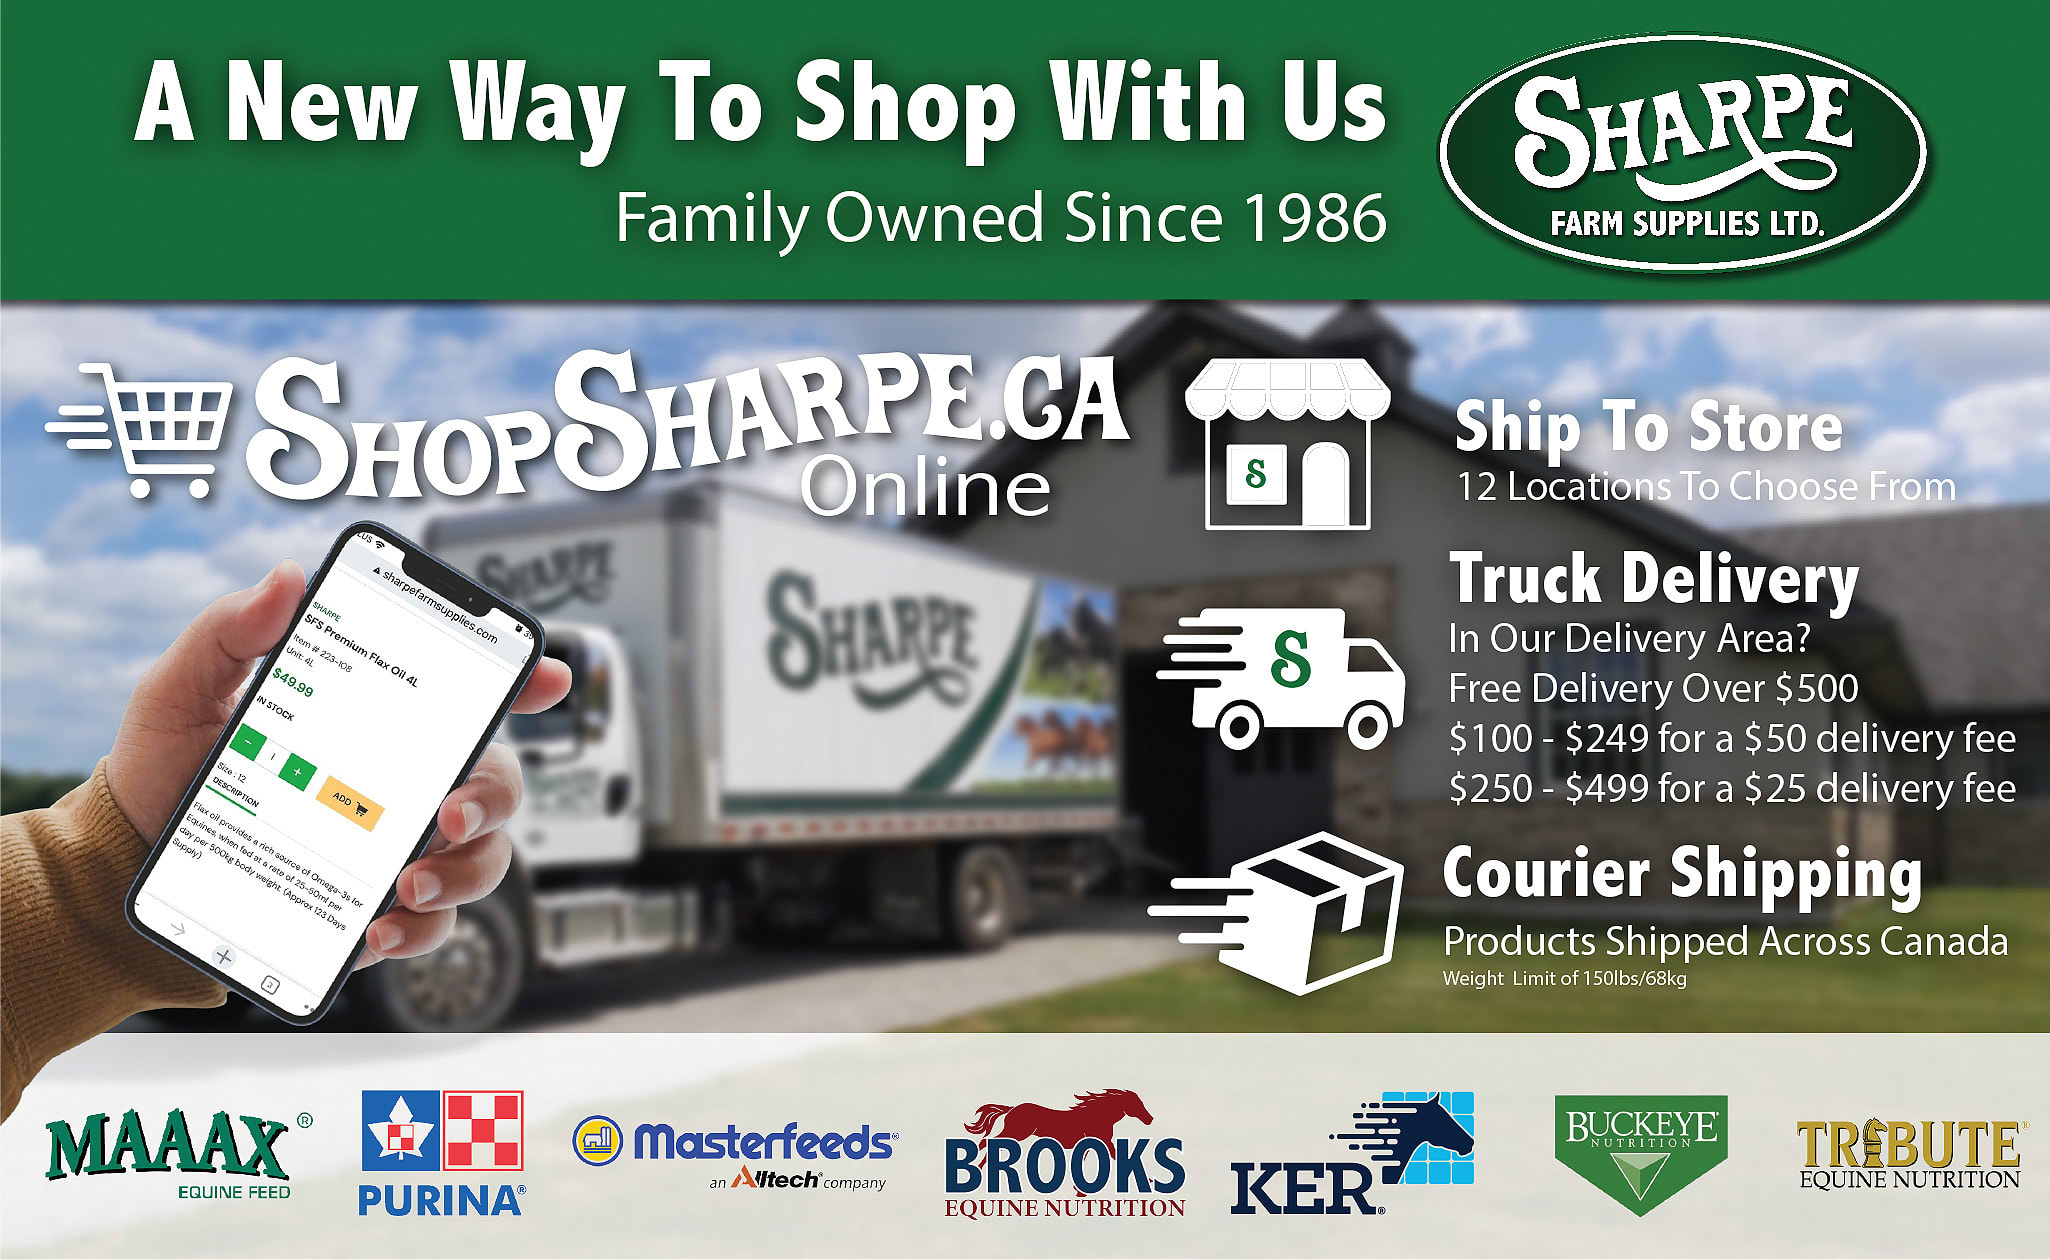 Sharp Farm Supplies Ltd.